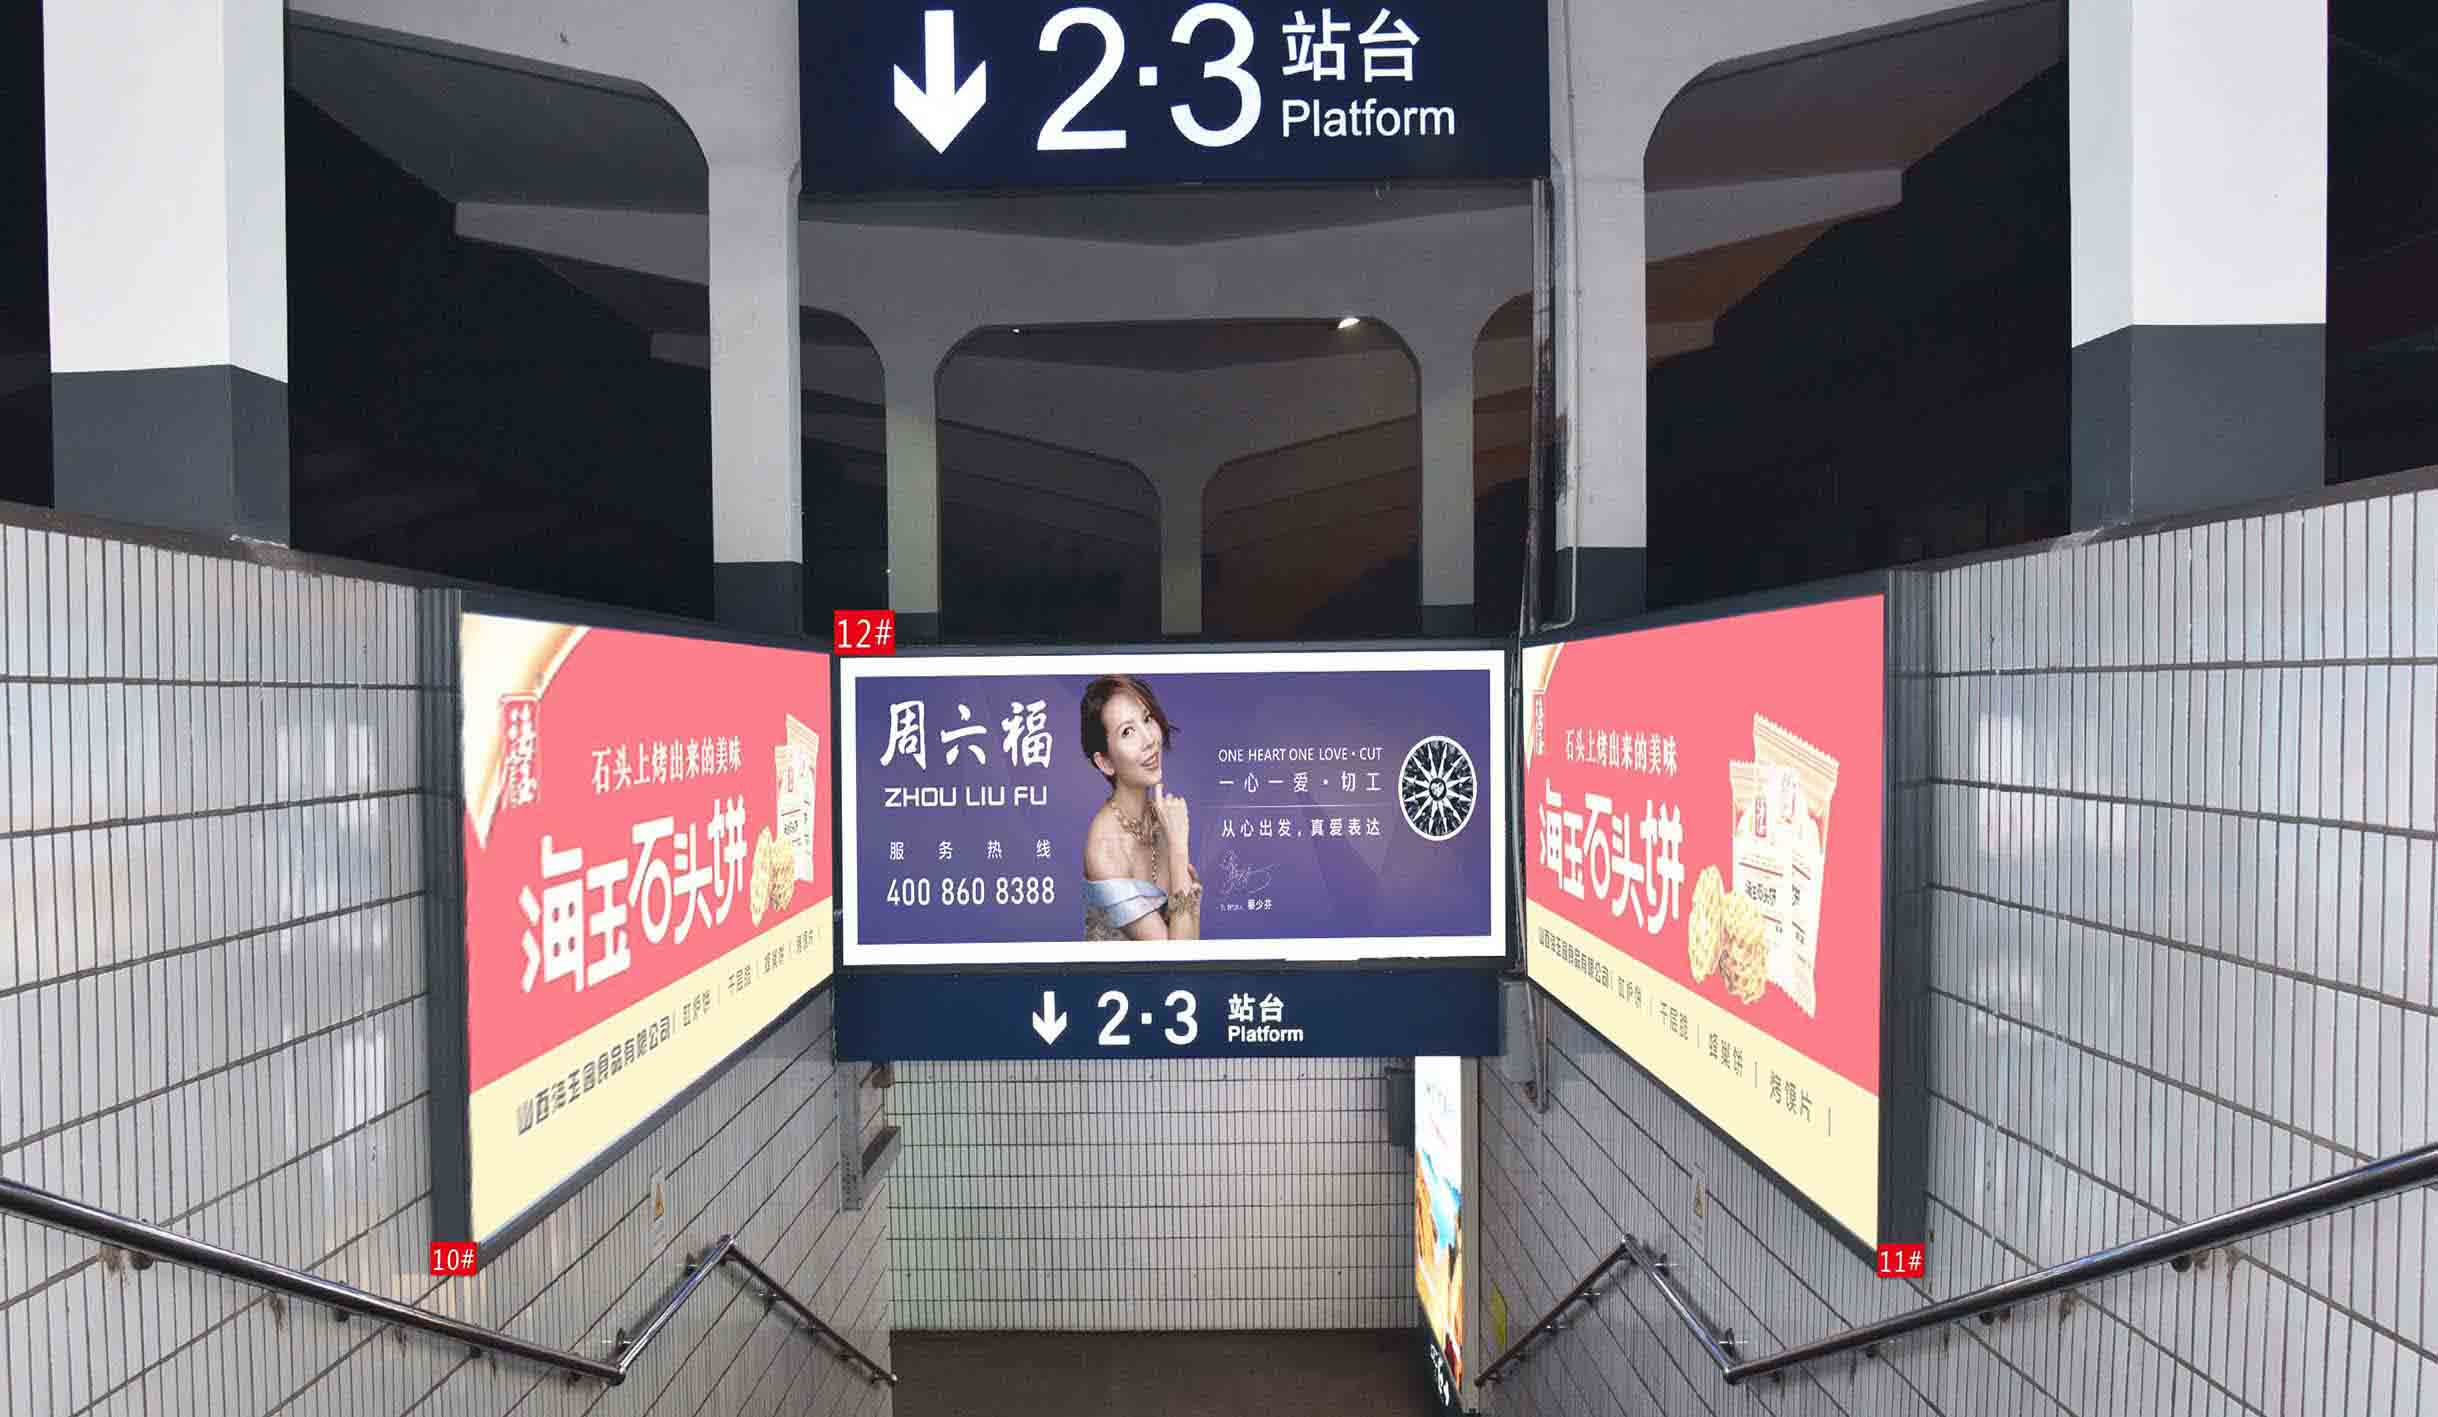 介休火车站2-3站台梯煤灯箱广告10# 、11#、 12#